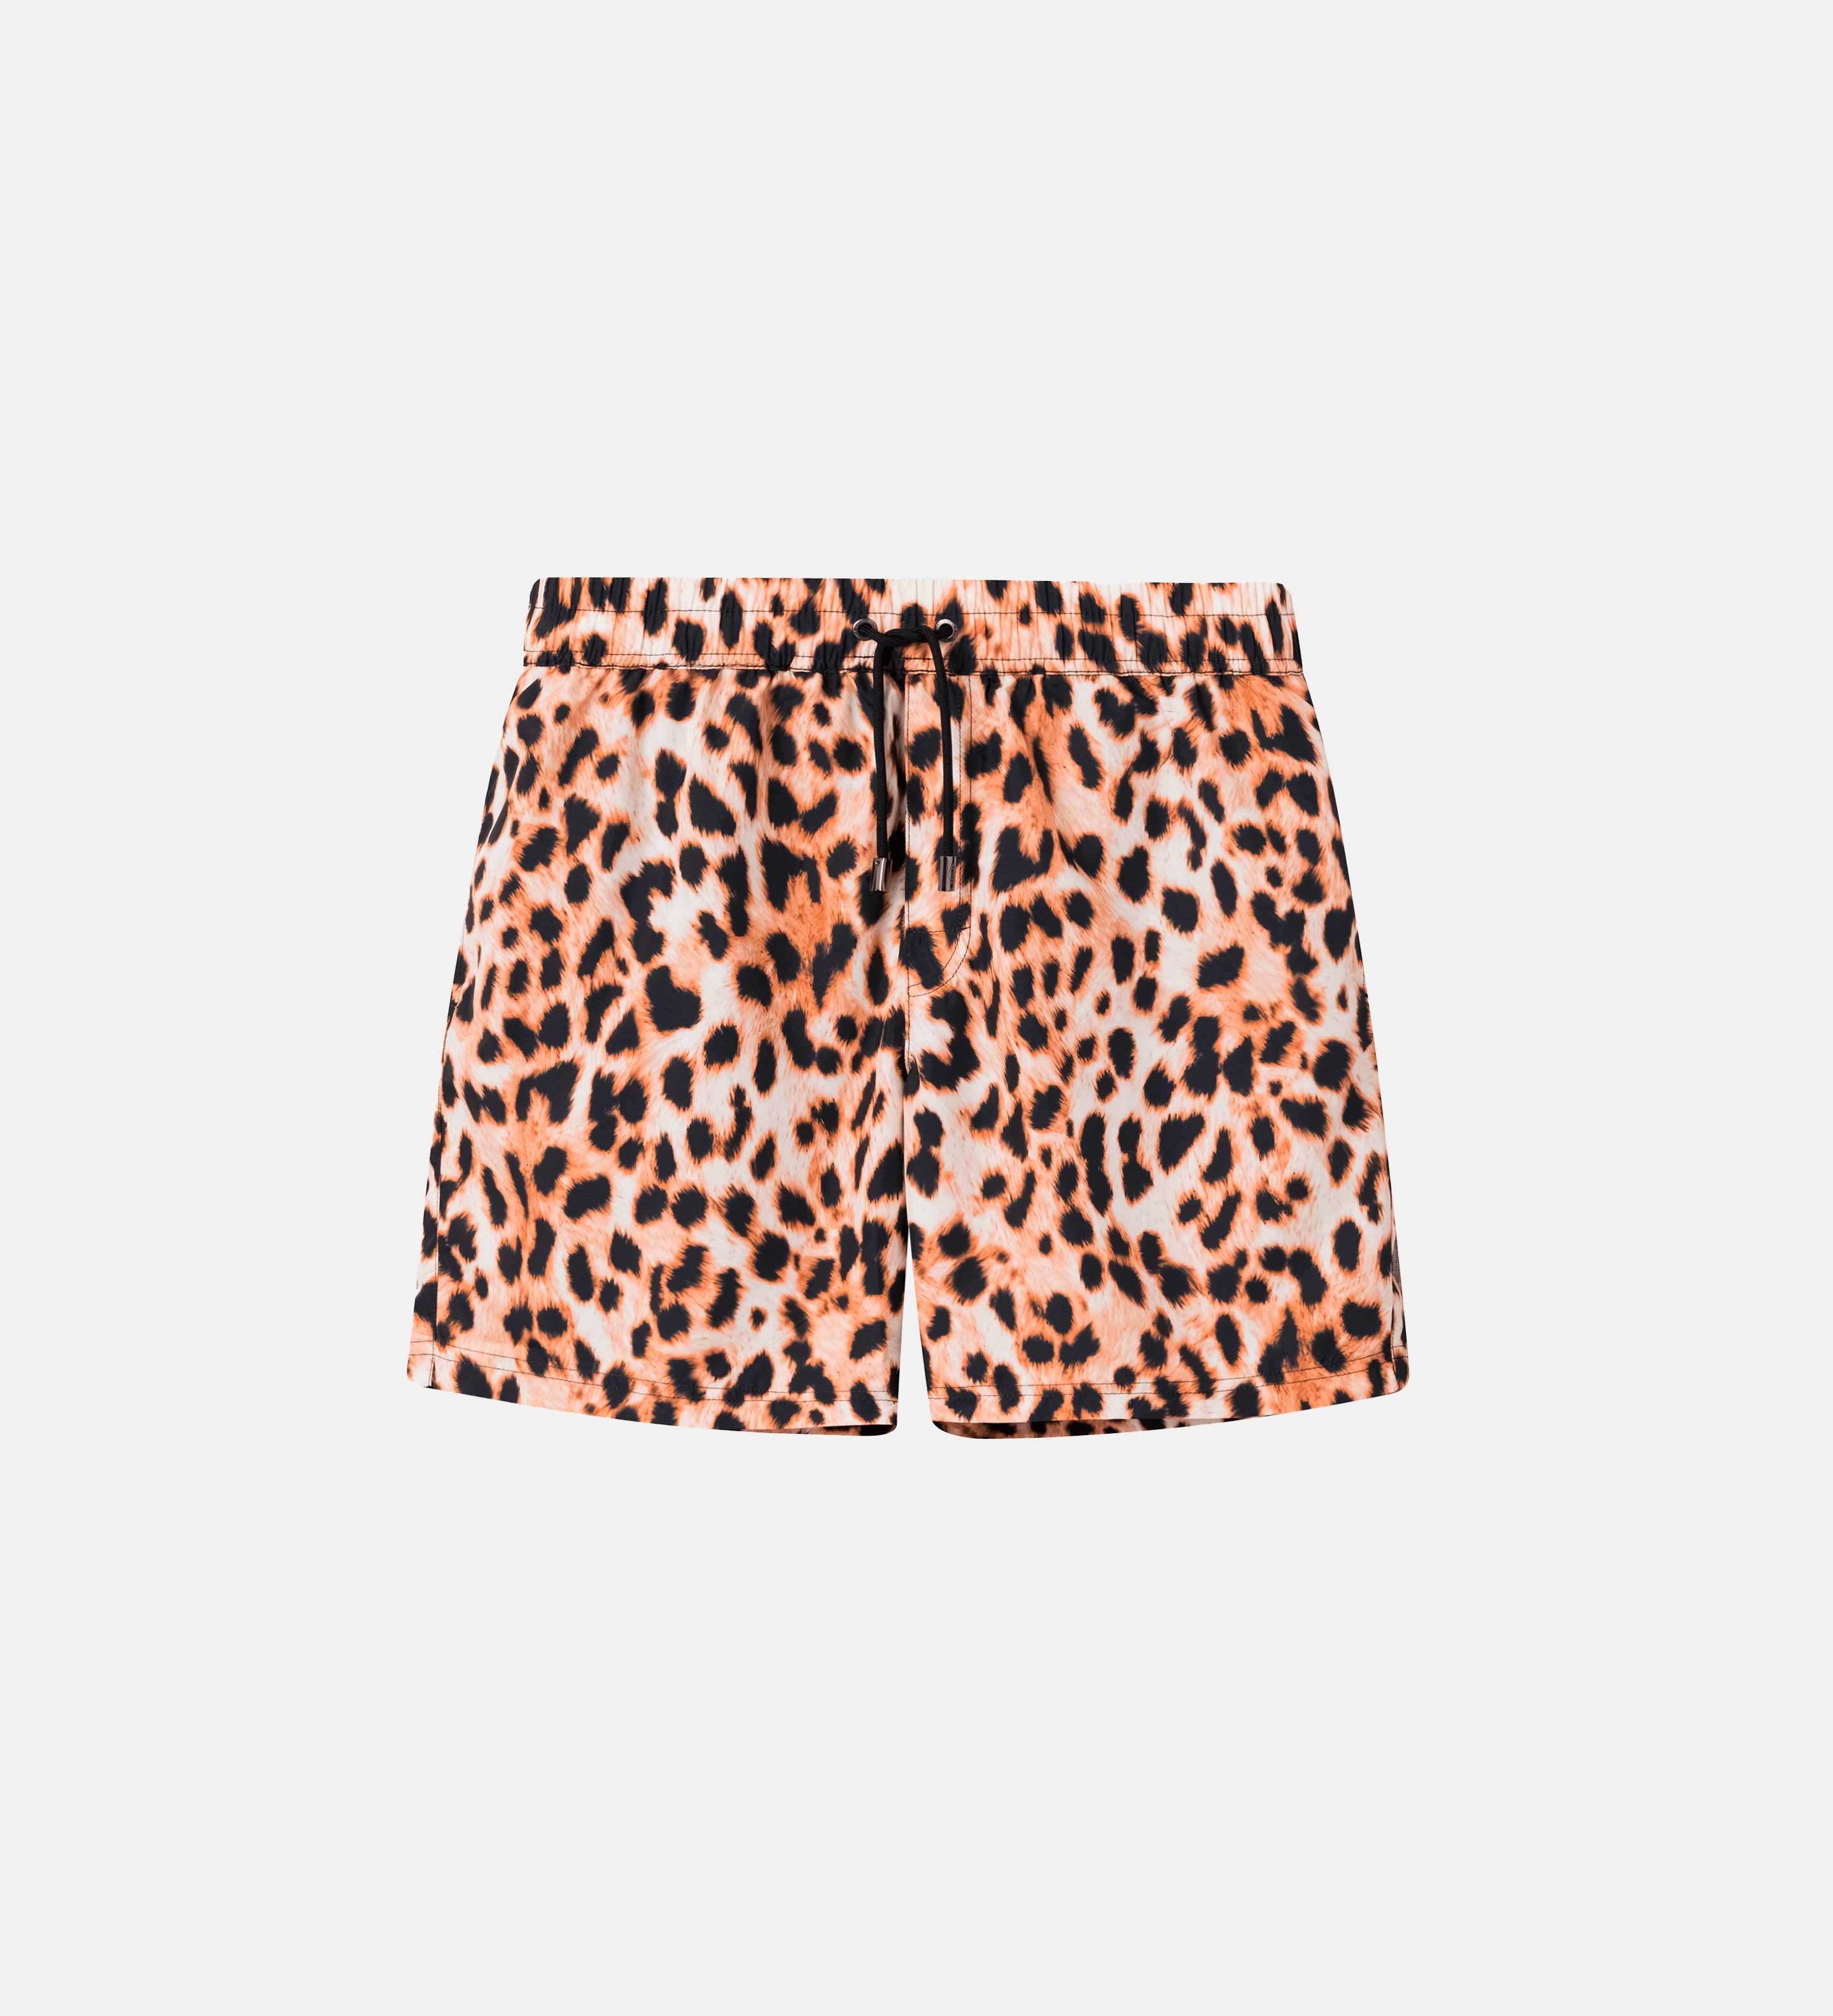 Leopard printed extended-length swim trunks